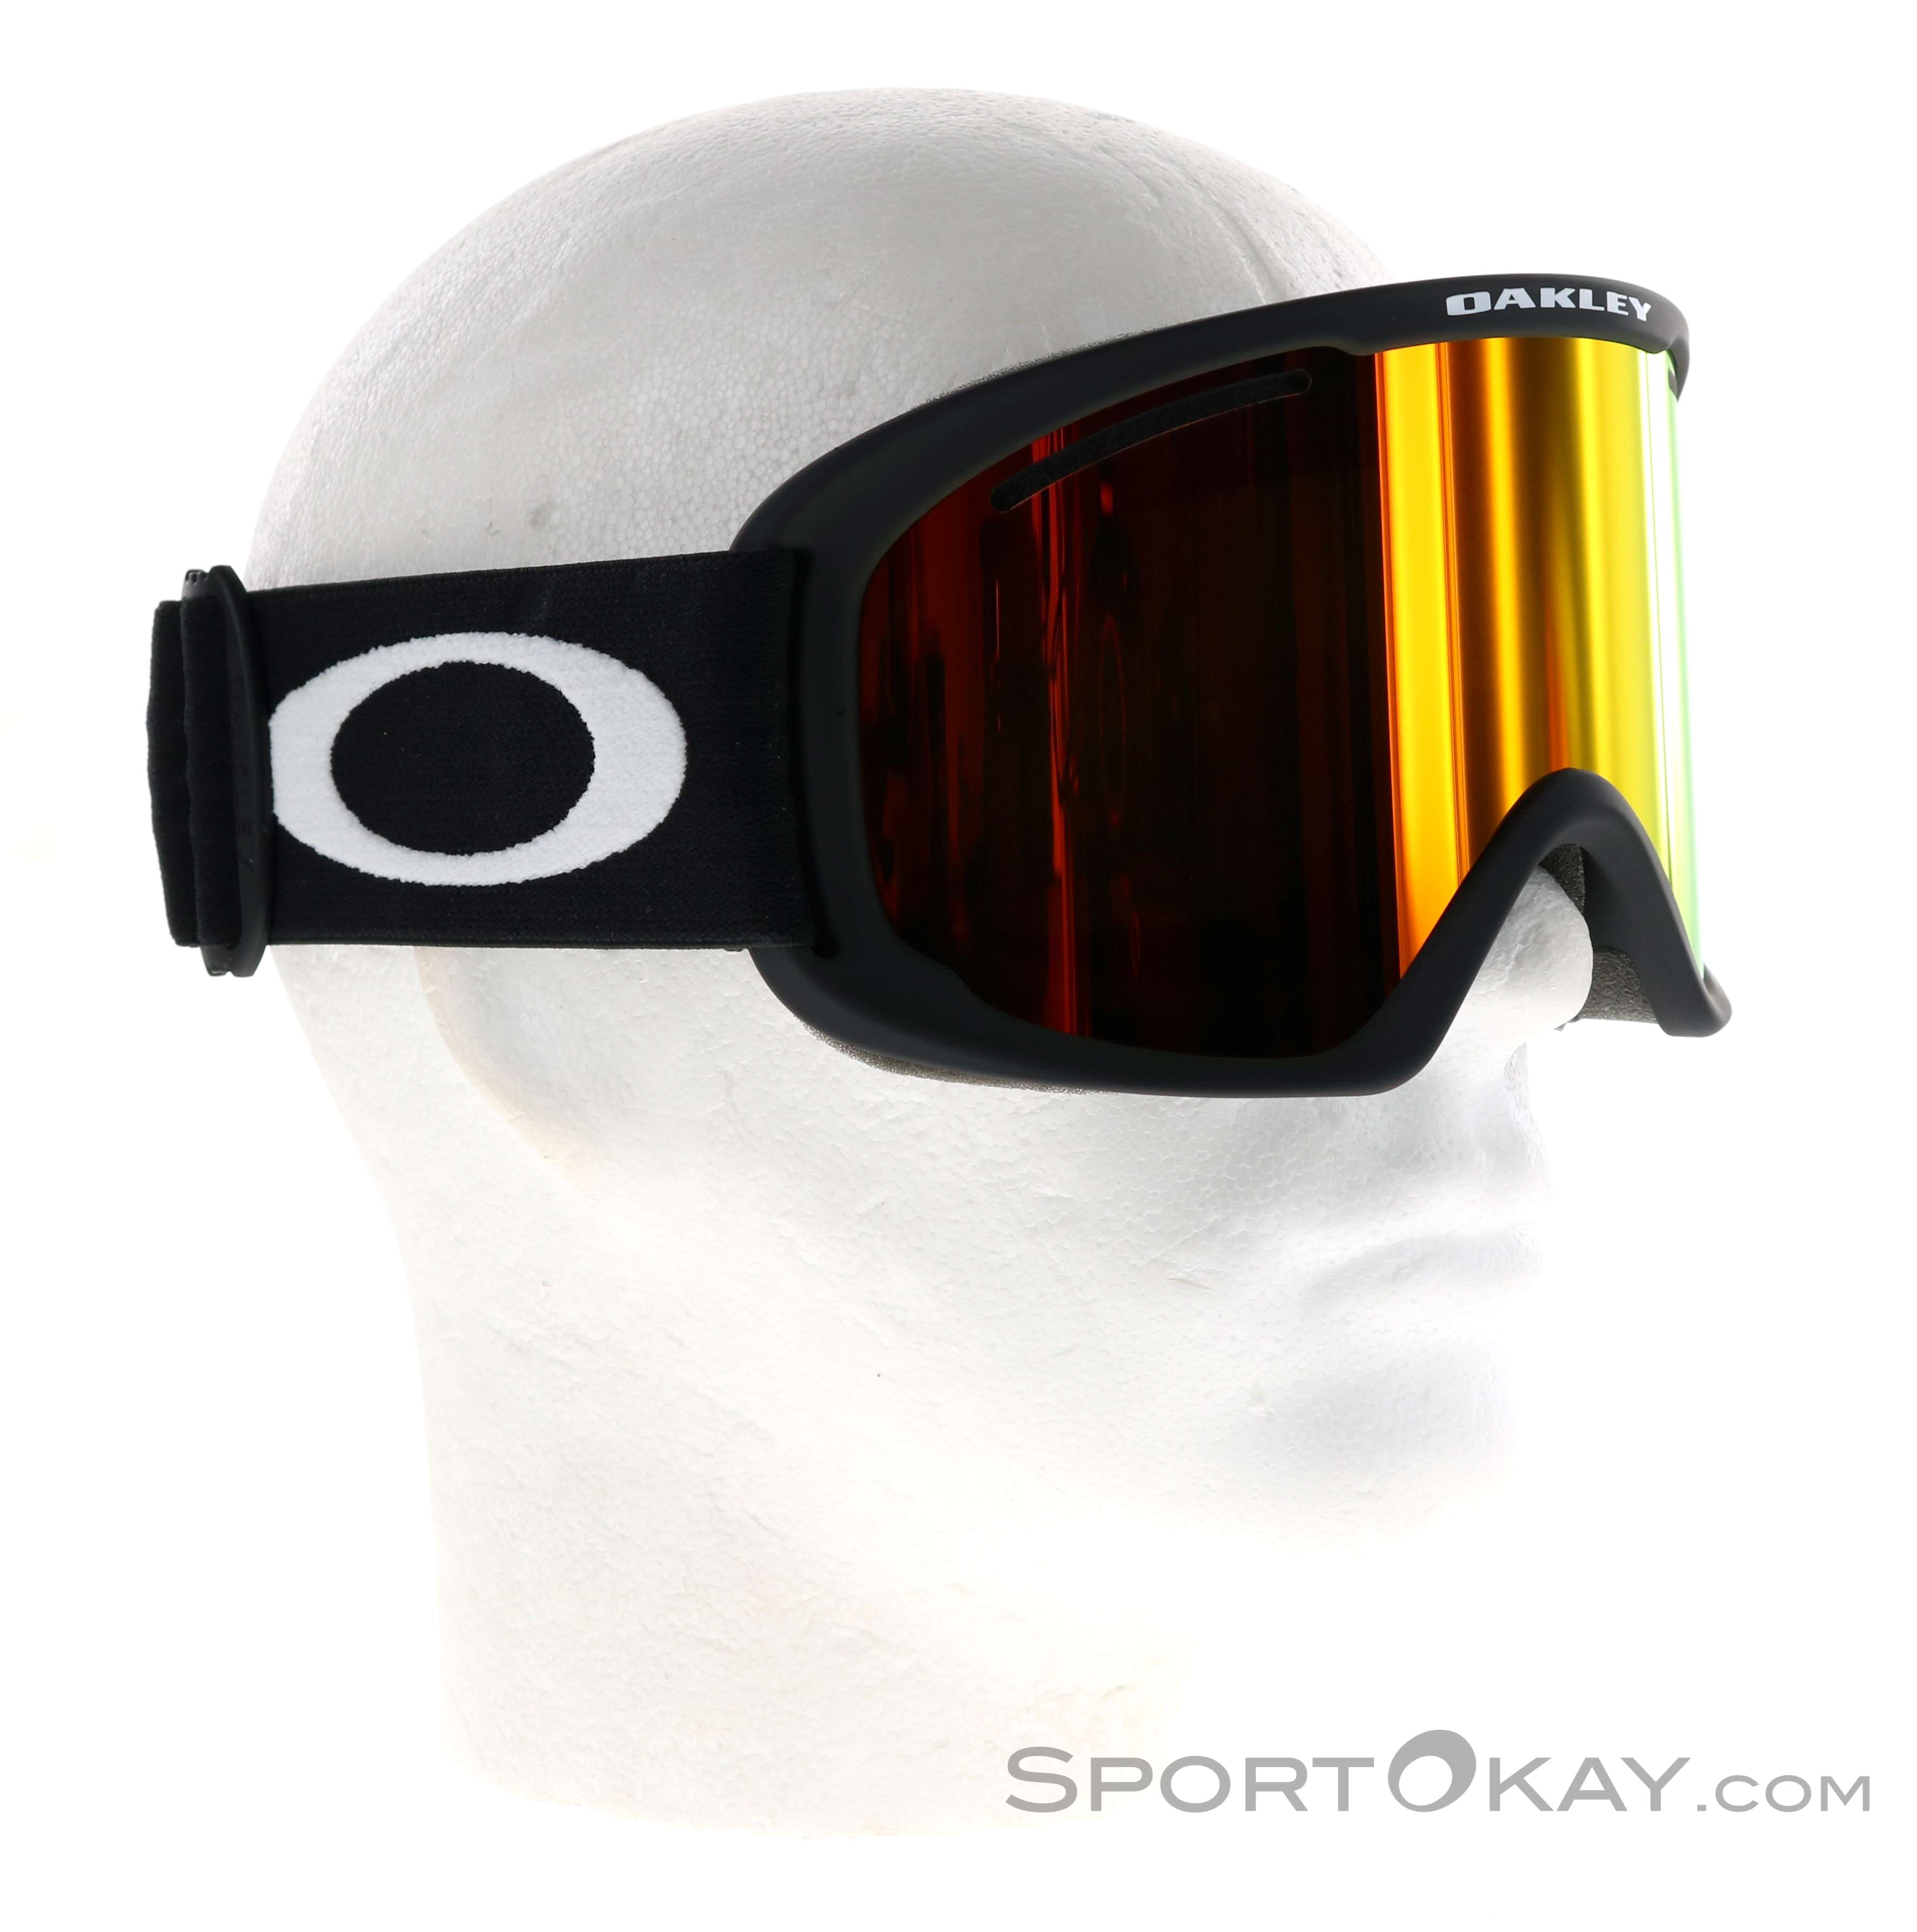 Oakley O Frame Ski XL Touring - All Pro - - - Glasses Ski Goggles Googles Ski 2.0